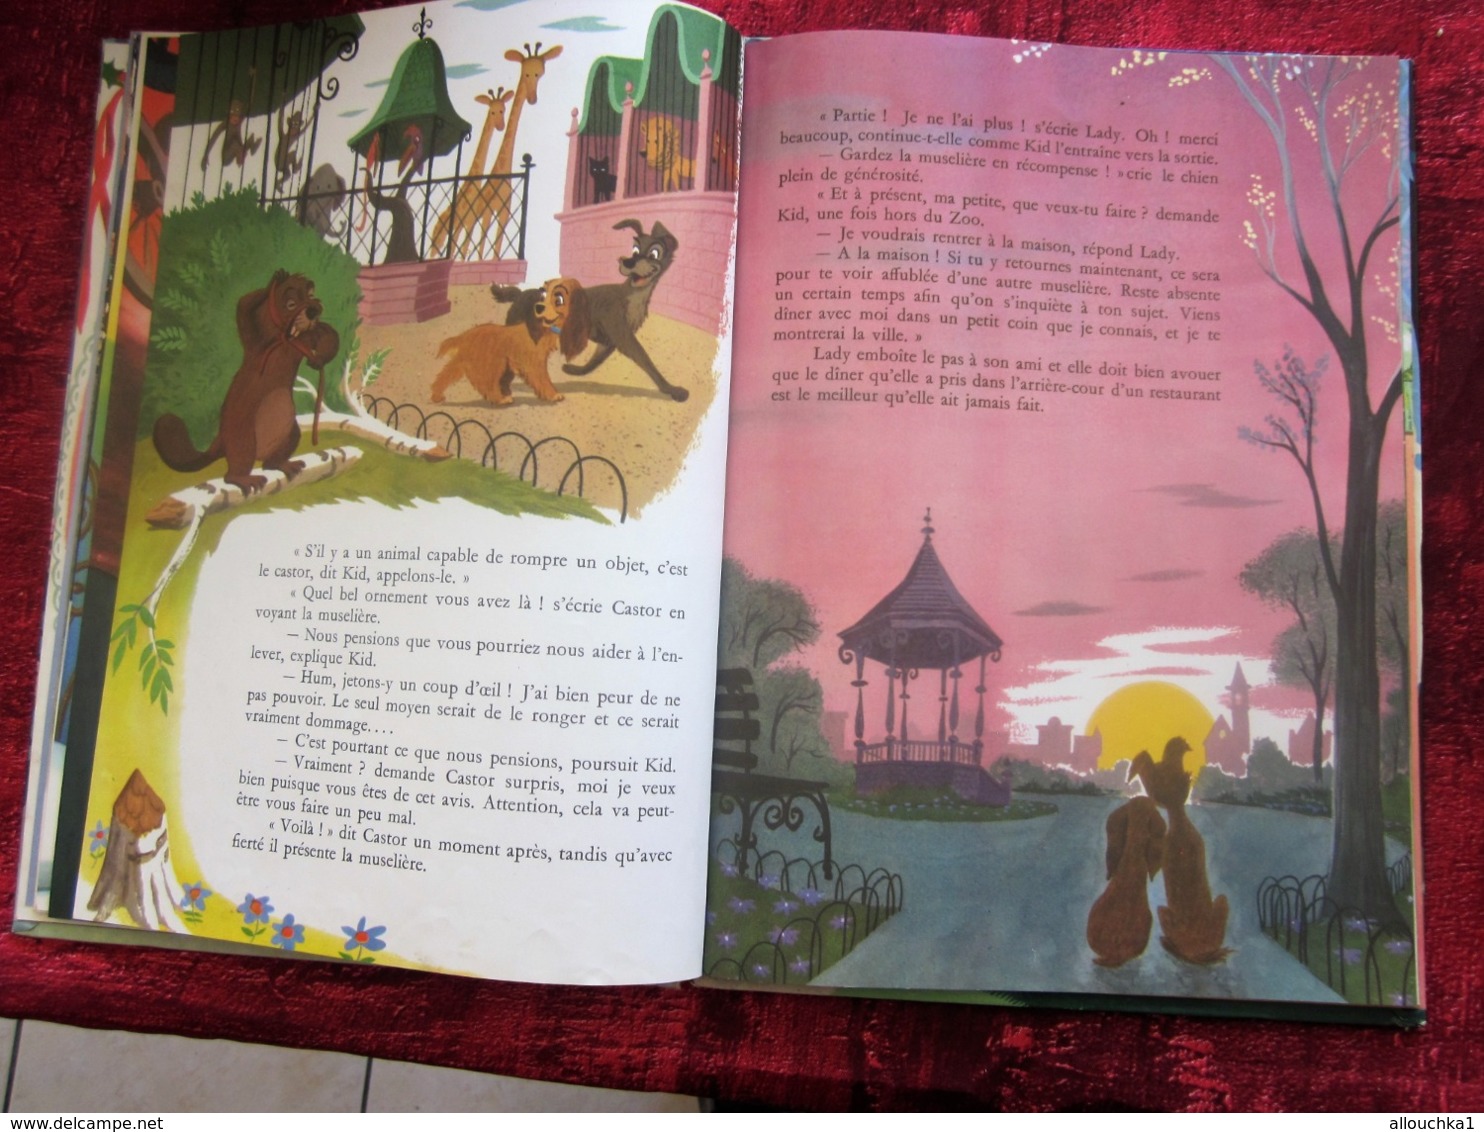 Les Aventures de Lady, Walt Disney,Collection Grands Albums Hachette, éditions Livre d'occasion ancien pour enfants